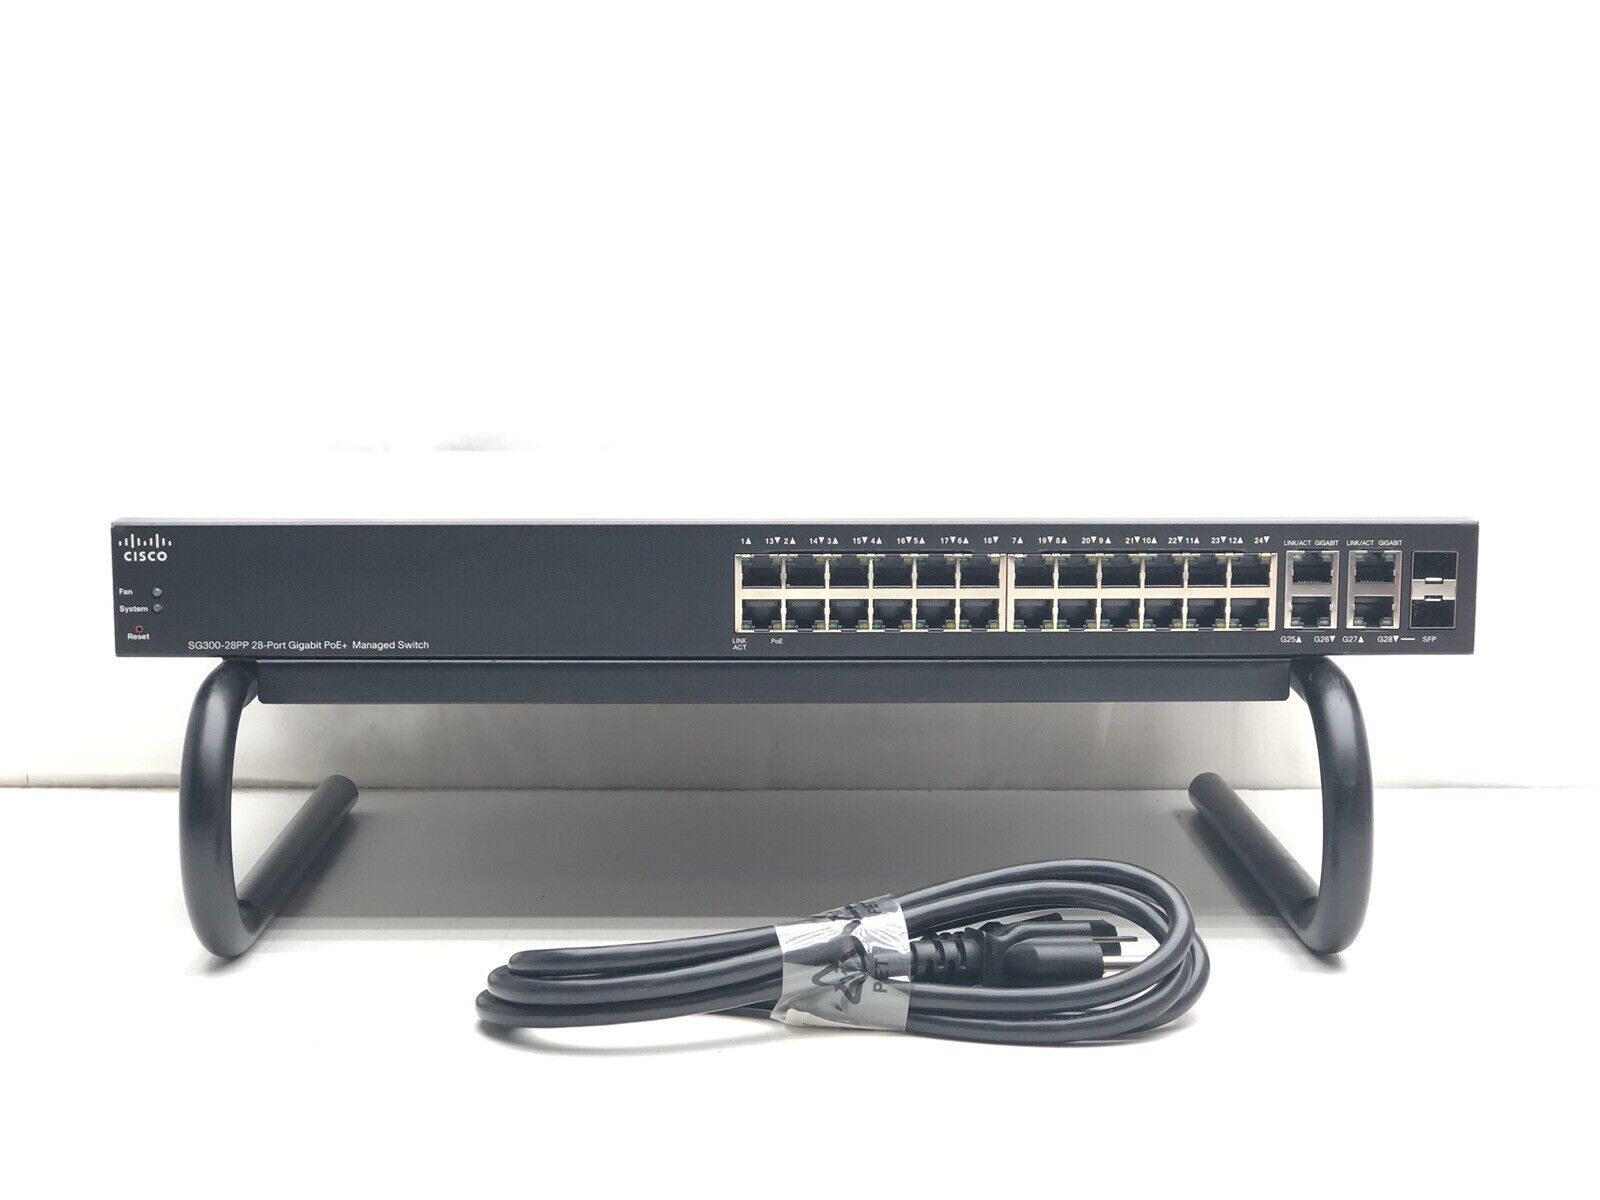 Cisco SG300-28PP-K9 28-Port Gigabit PoE+ Managed Switch SG300-28PP